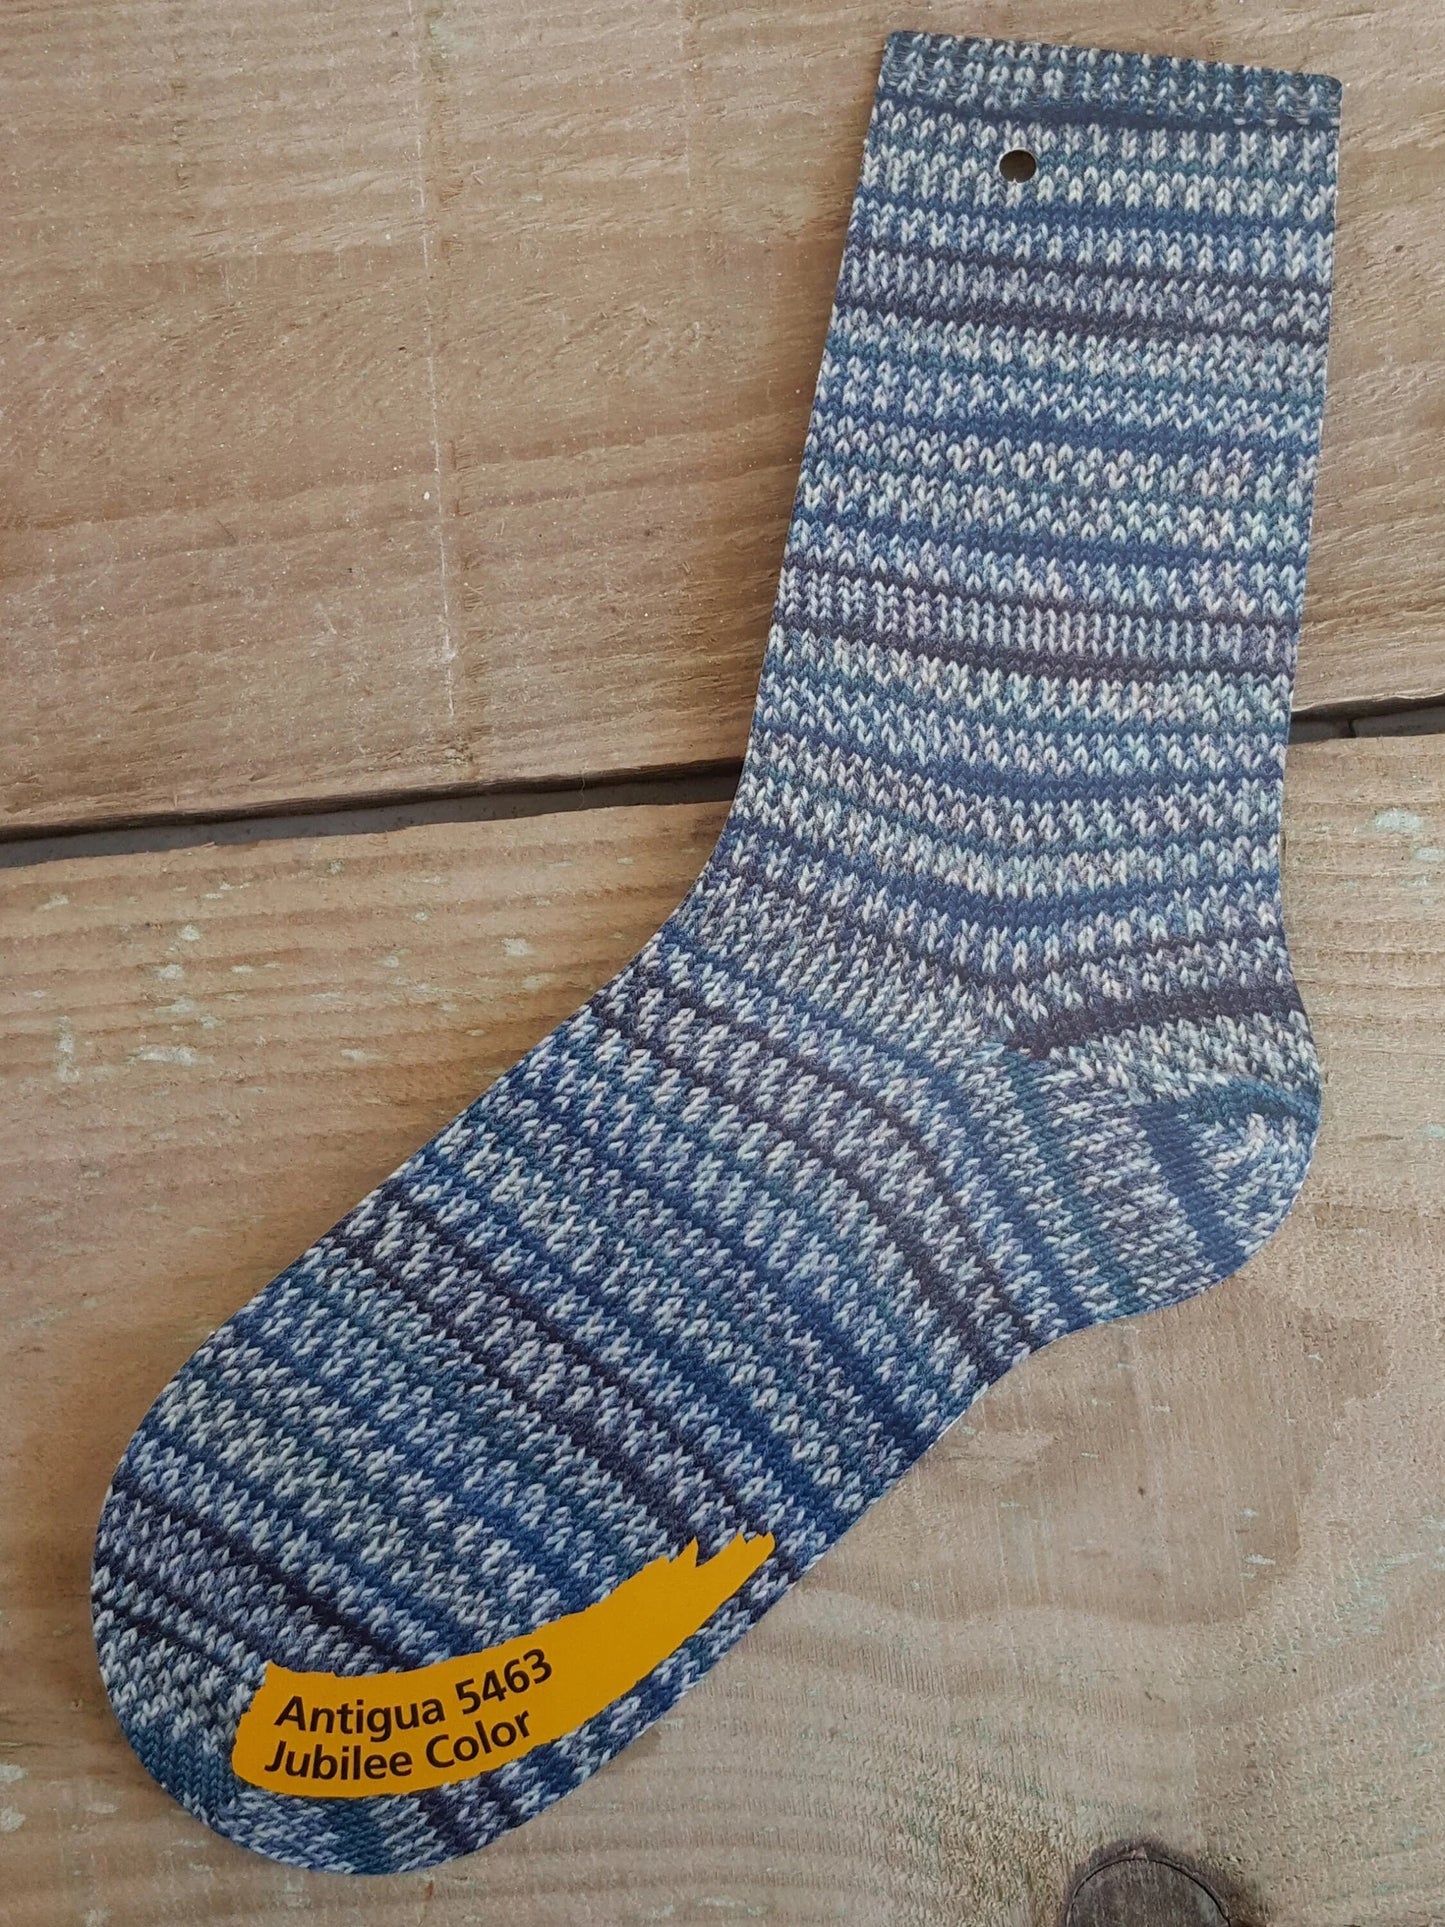 Regia Jubilee Color, 4 ply self patterning sock yarn, 100g